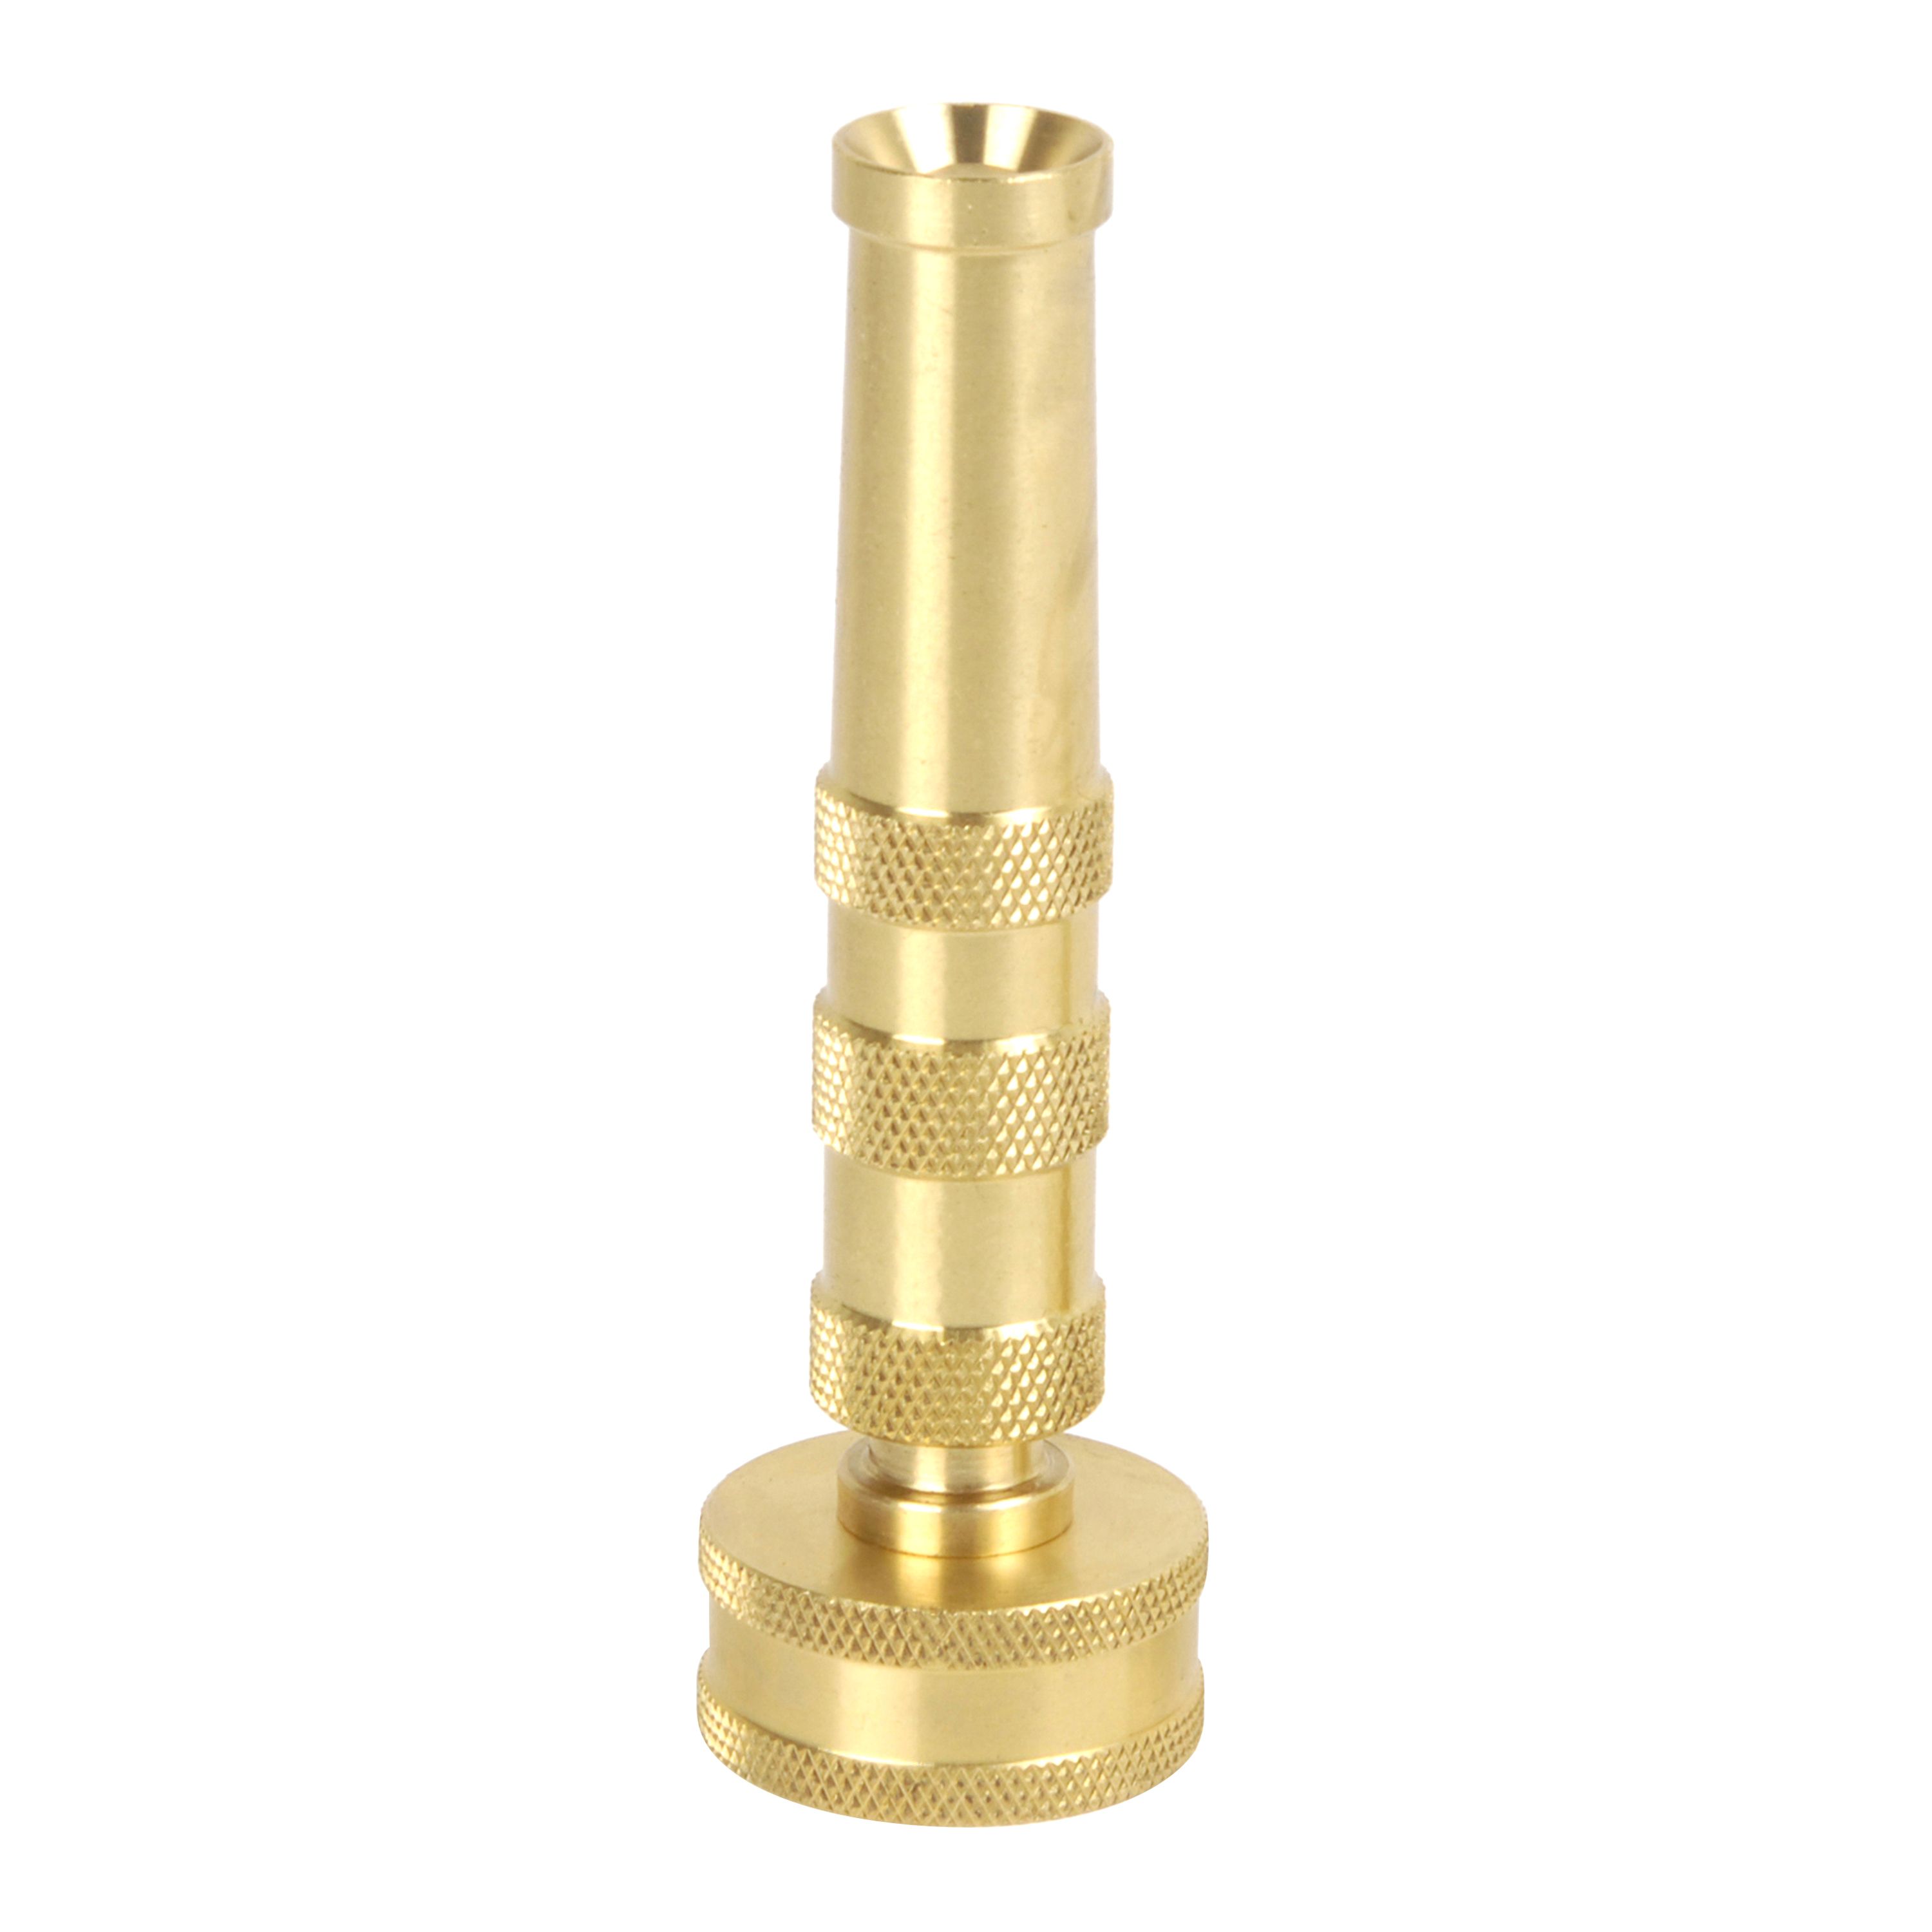 Solid Brass 4" Garden Nozzle Heavy Duty Adjustable Twist Water Hose Nozzle USA 